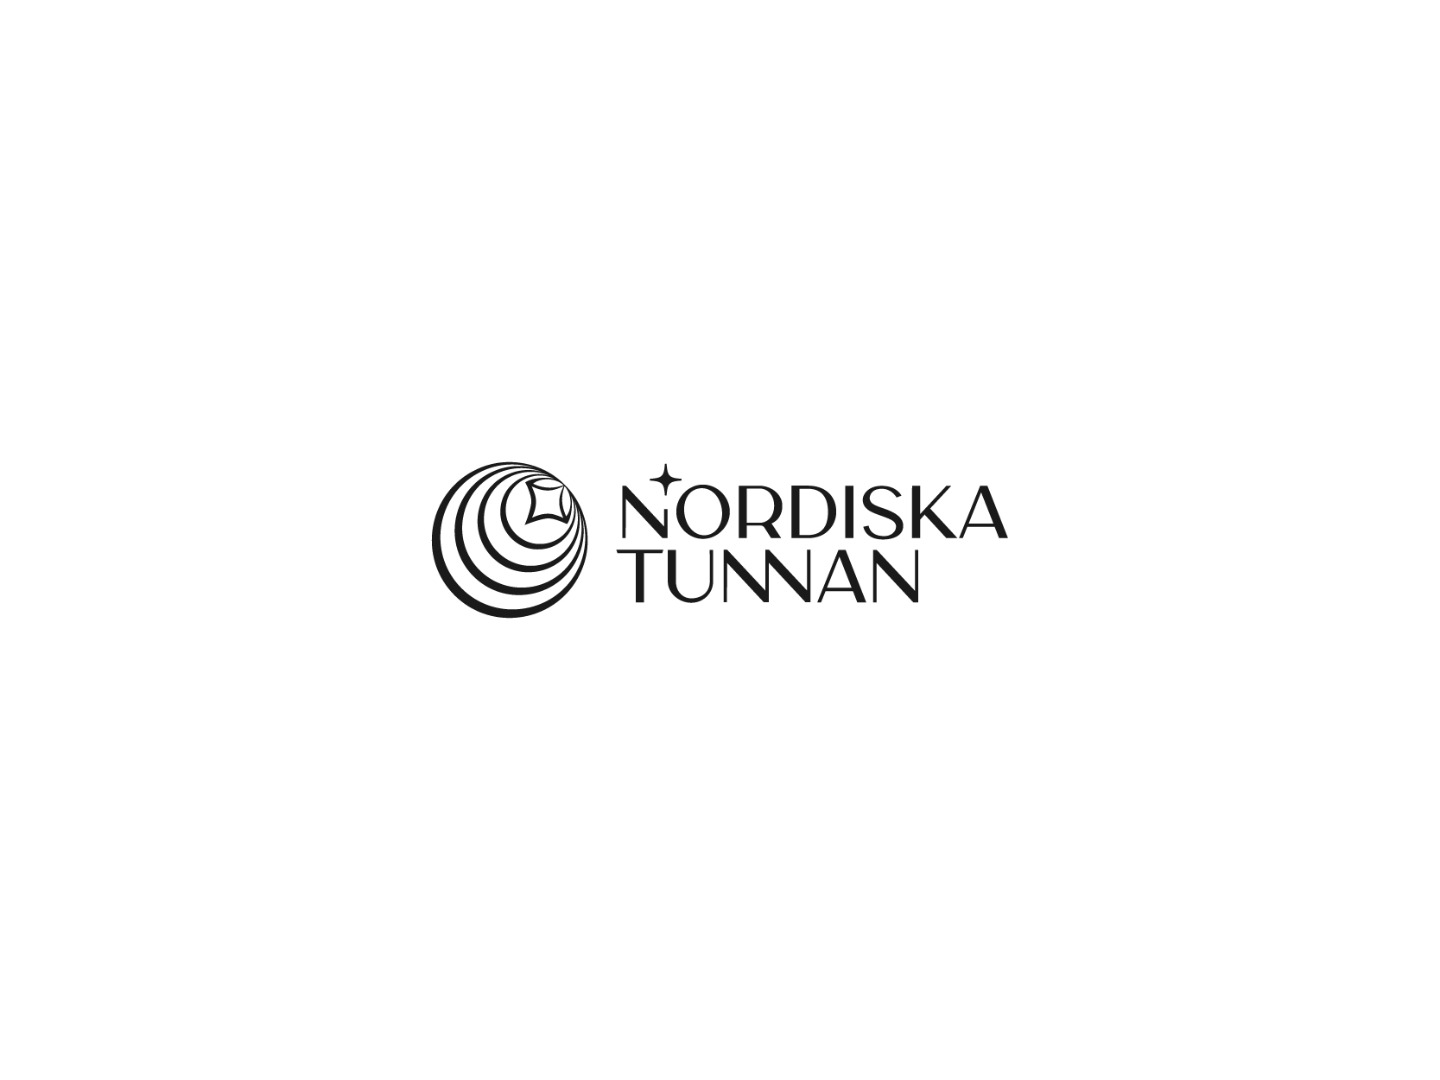 Nordiska_Tunnan_02